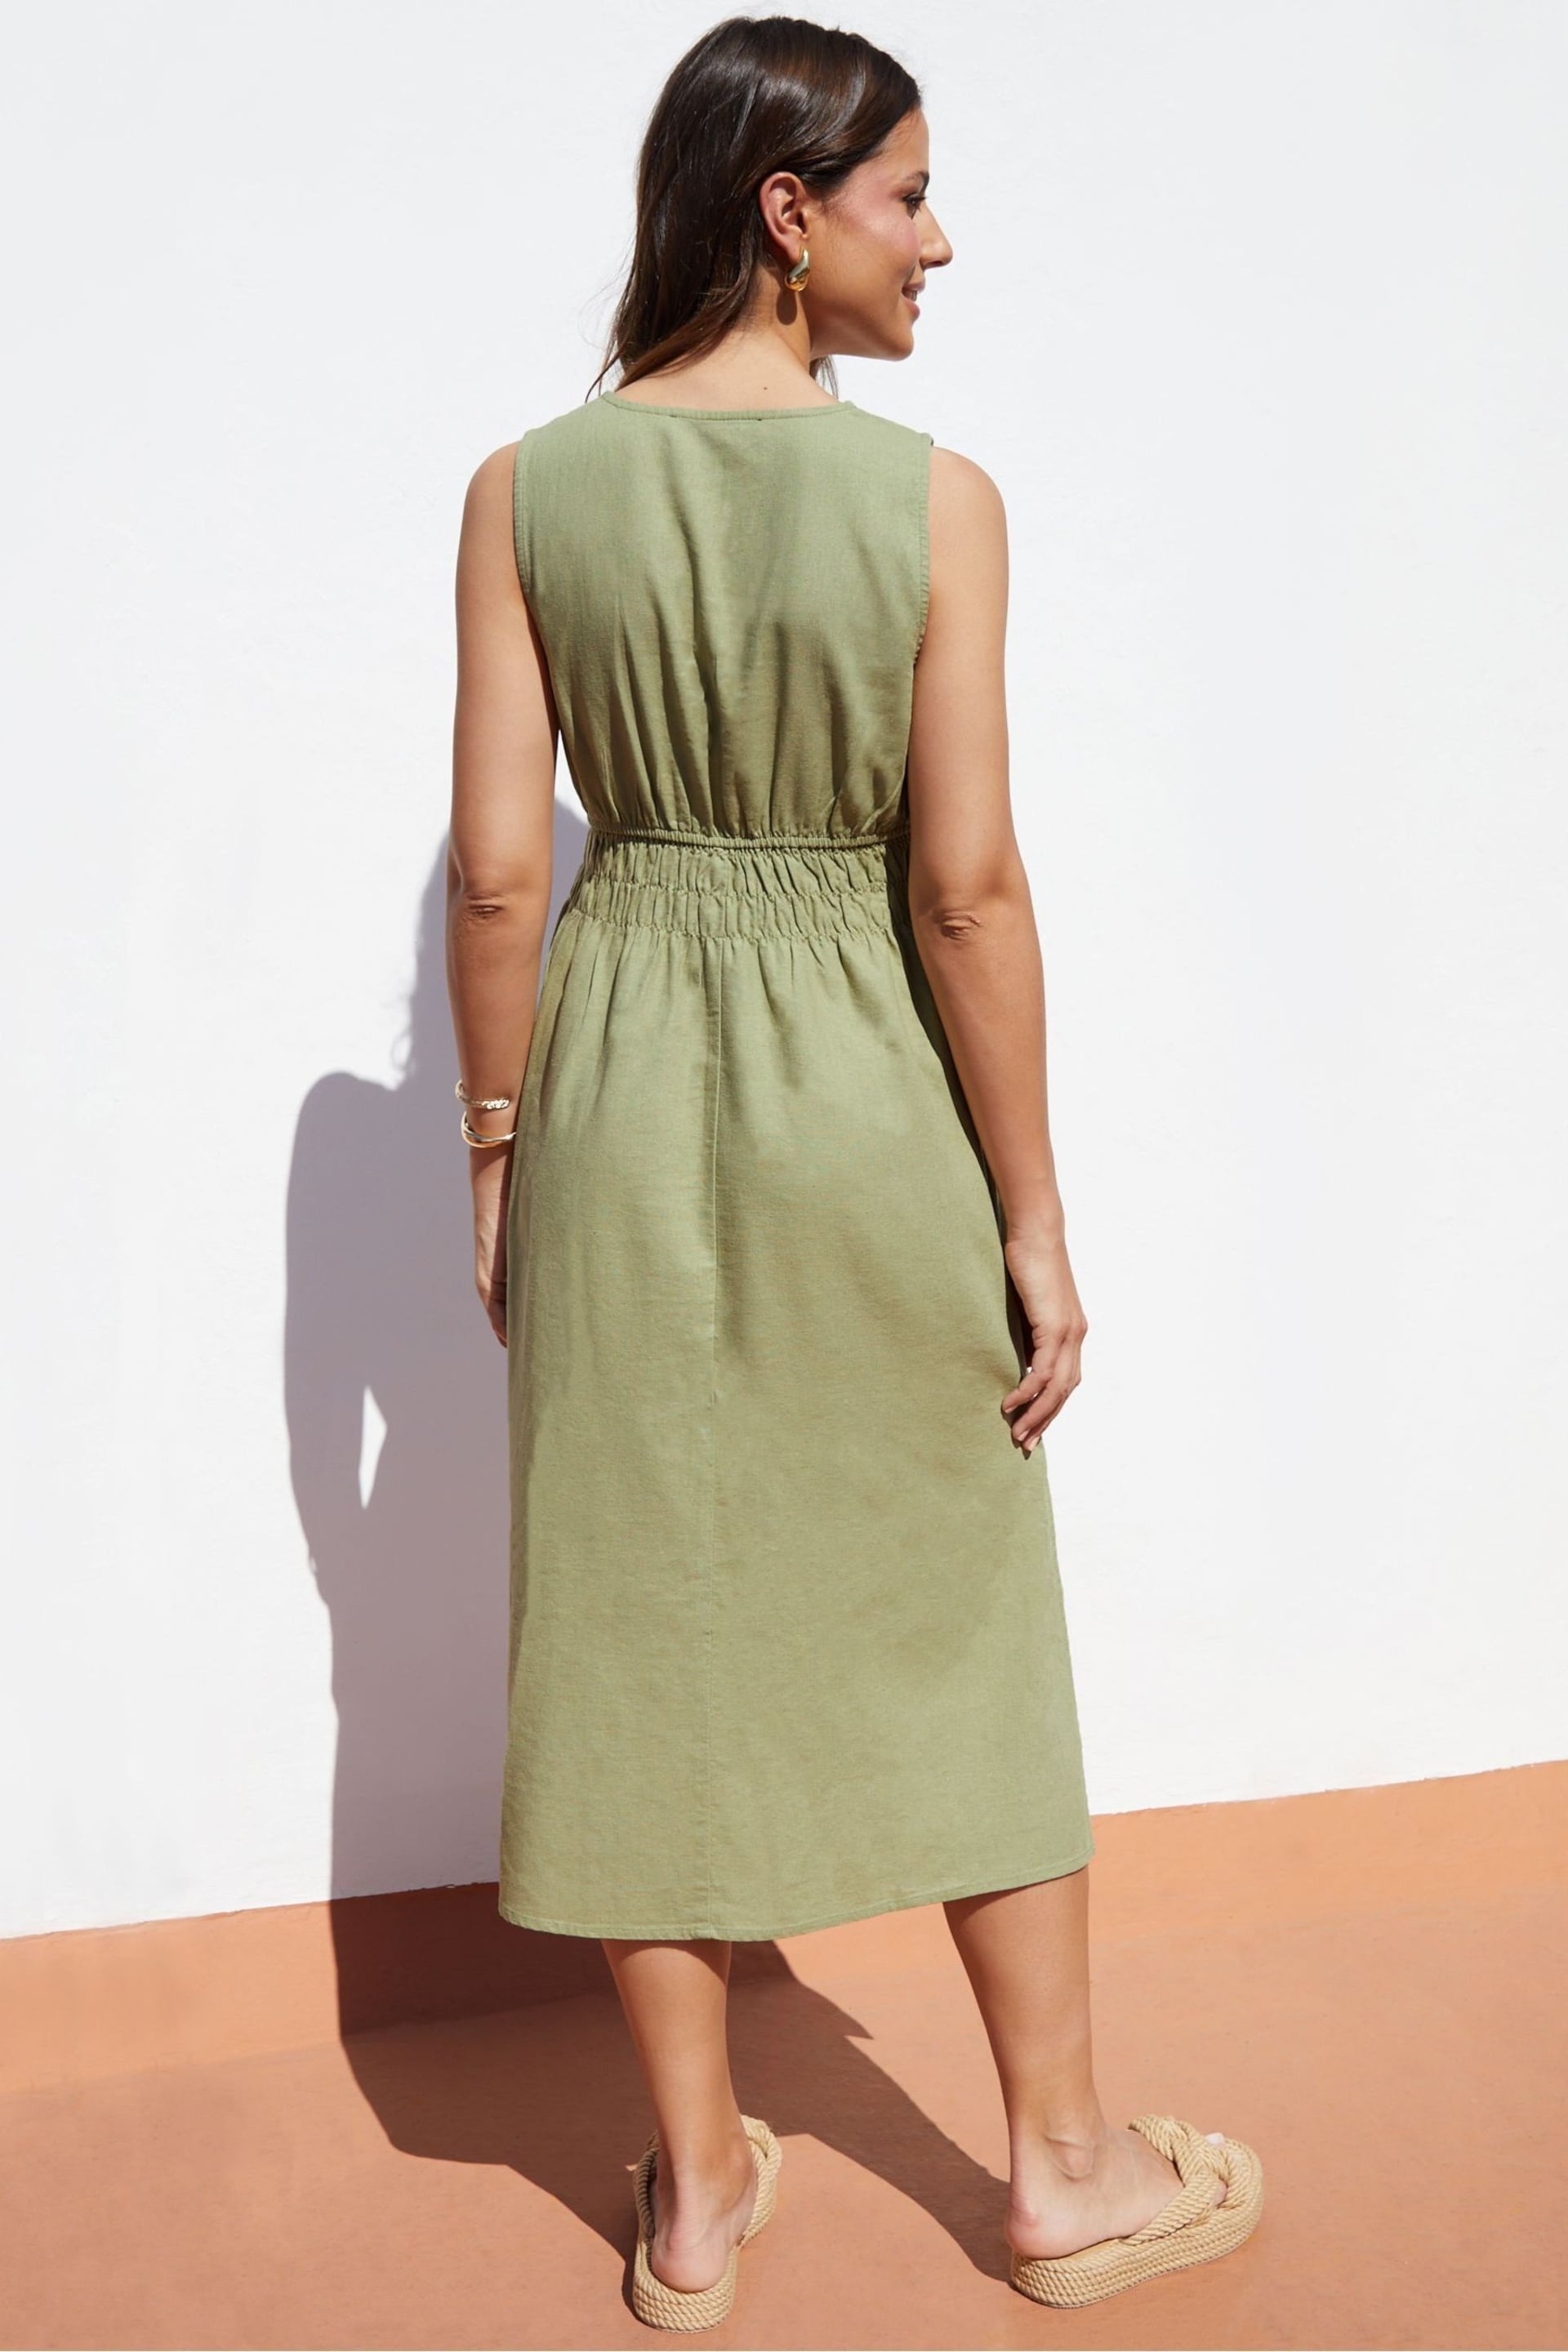 Threadbare Green Linen Blend V-Neck Sleeveless Ruched Midi Dress - Image 3 of 5